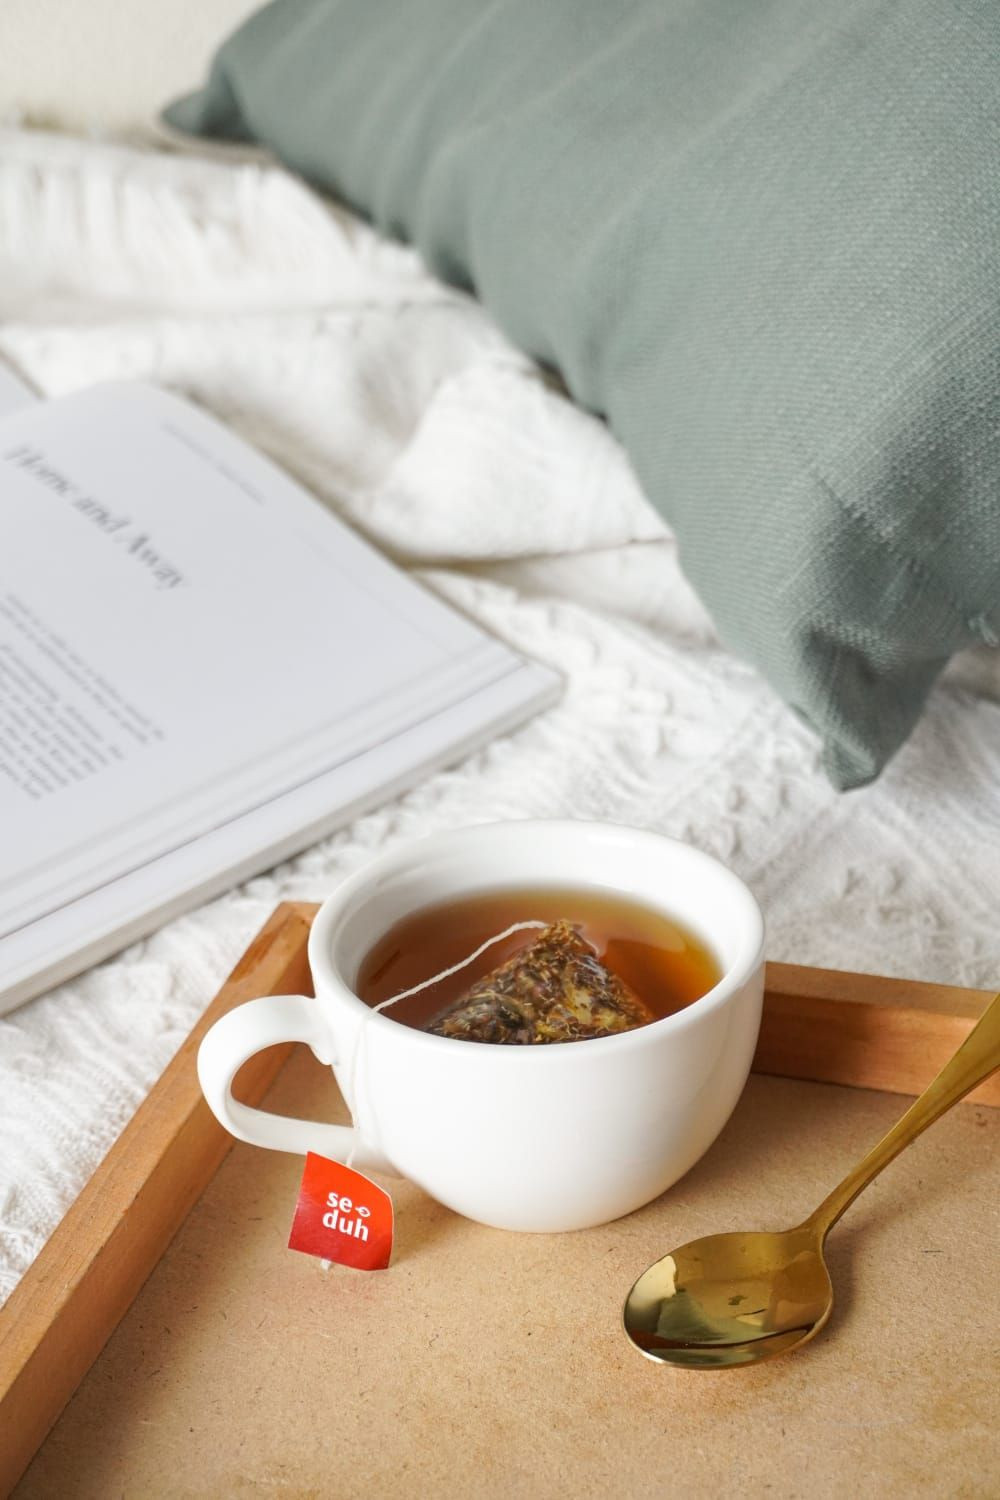 Yesdok x Seduh.tisane, teh dan tisane, relaksasi adalah, cara relaksasi, relaksasi otak, manfaat relaksasi, chamomile tea, green tea, peppermint tea, lavender tea, yesdok